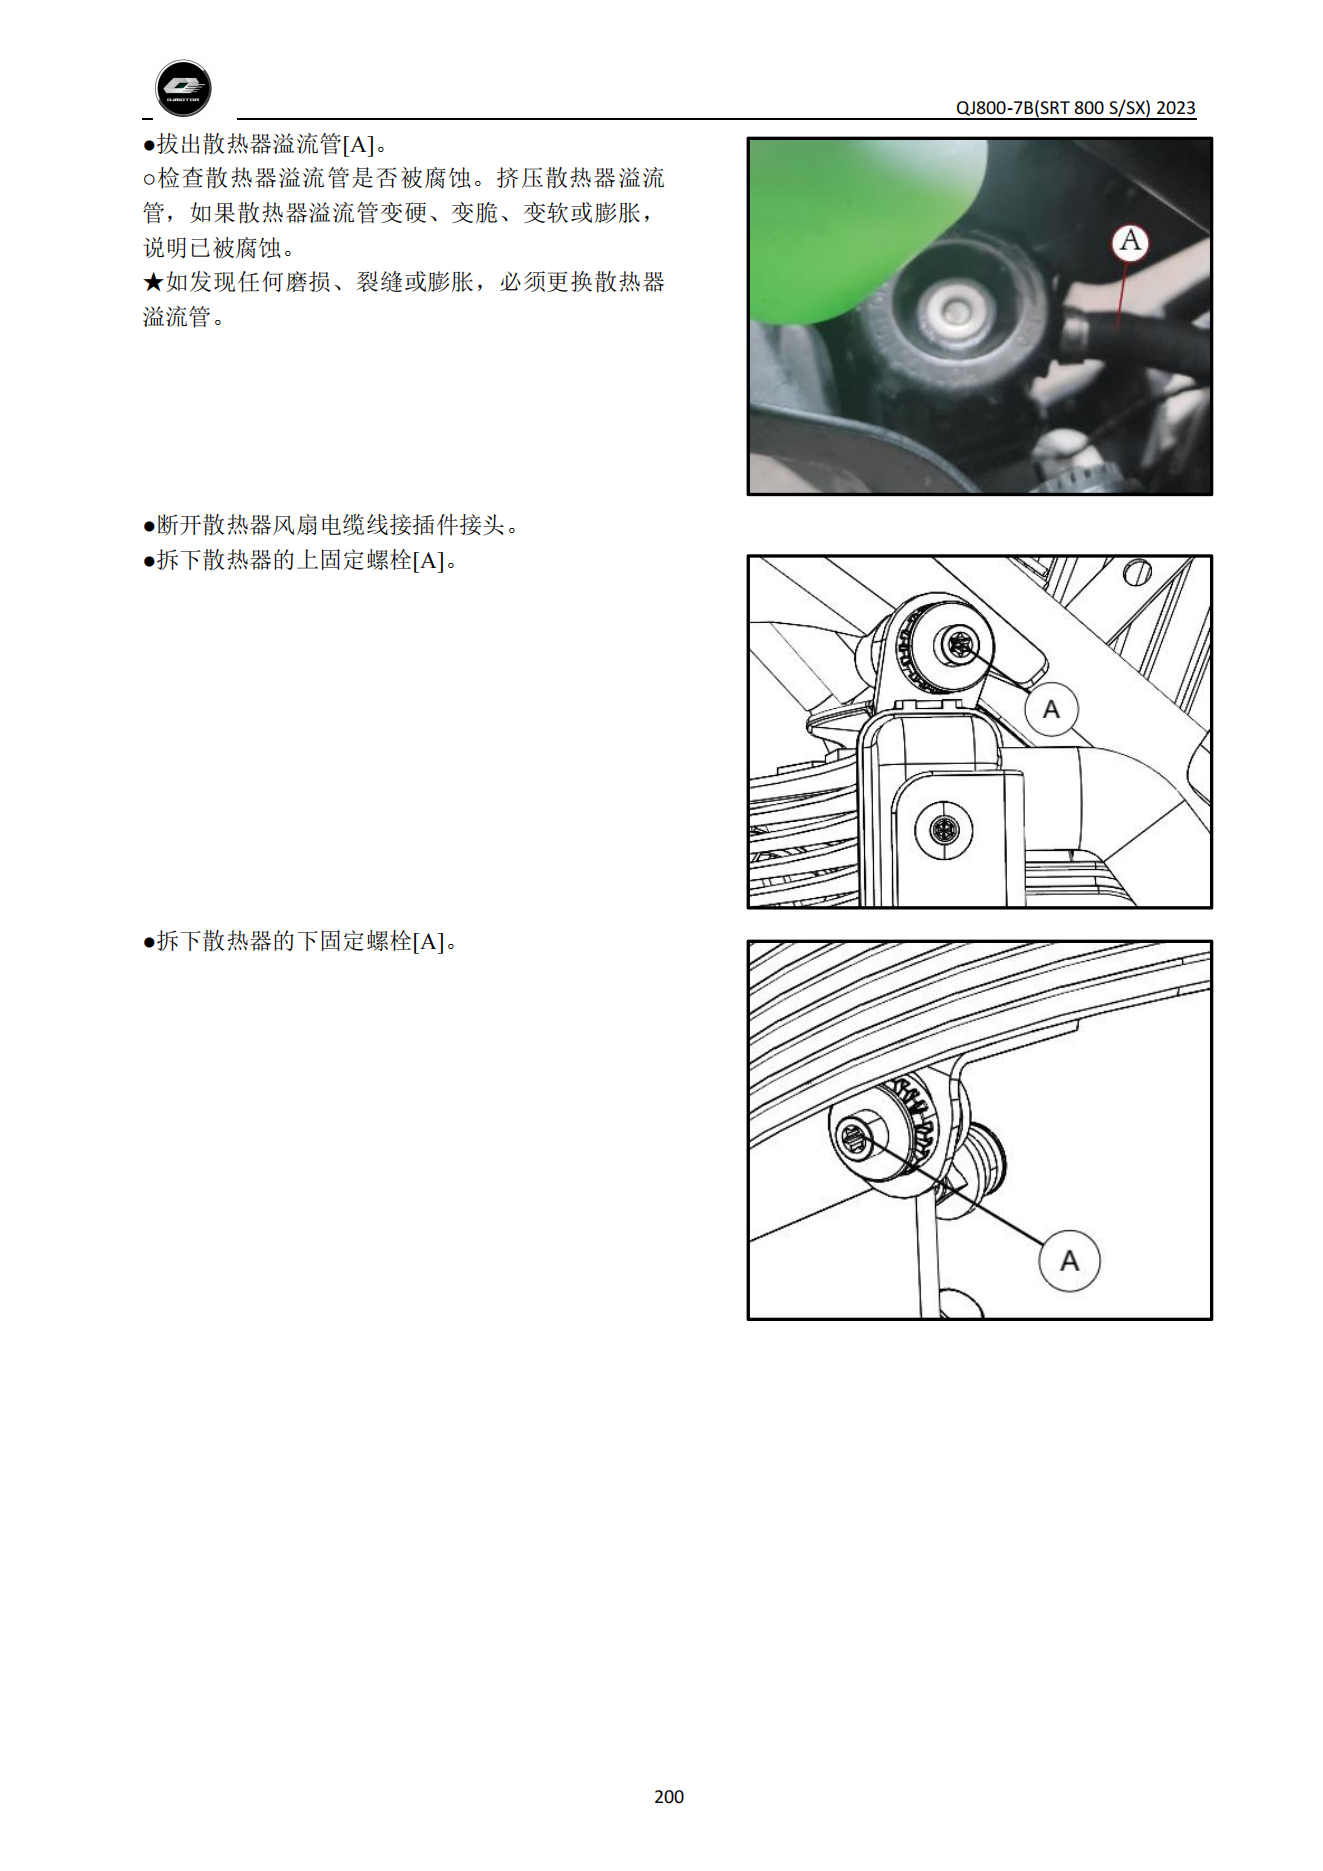 简体中文钱江骁800 QJ800-7B SRT 800 SSX 维修手册插图4